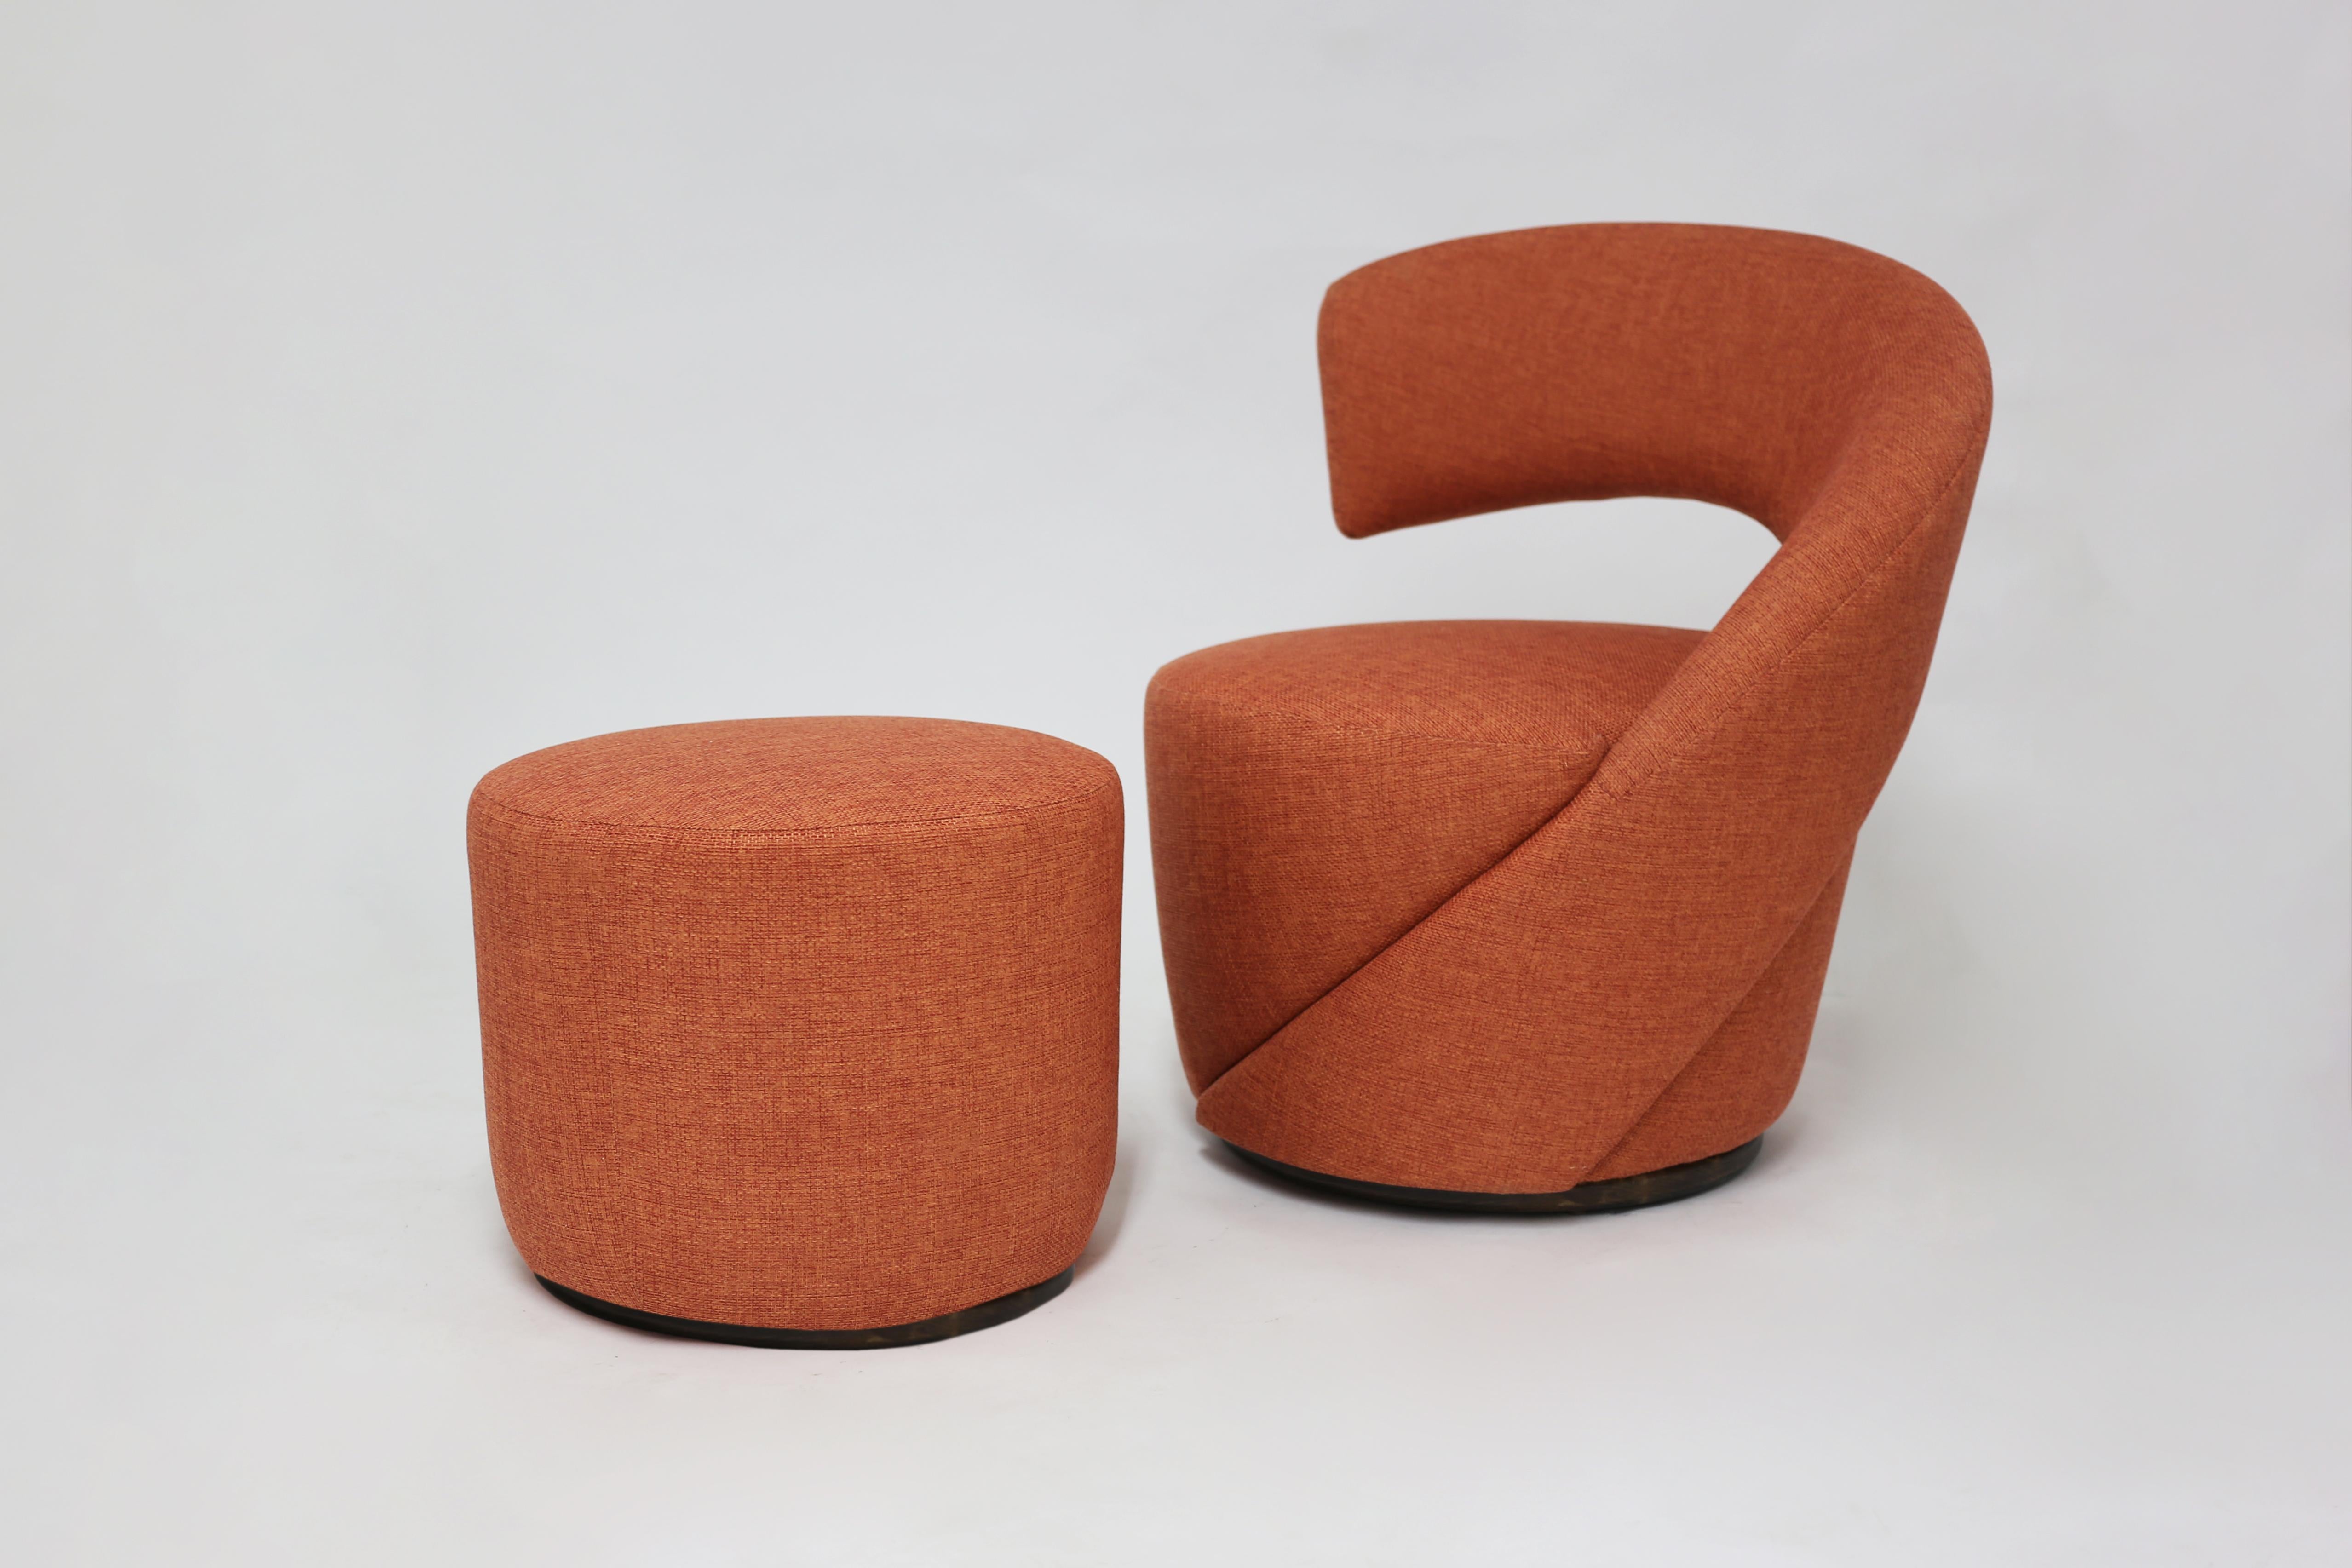 Der Albee-Stuhl mit Ottomane ist die neueste Ergänzung unserer Möbellinie. Ein modern gestalteter Stuhl, der ebenso vielseitig wie bequem ist. Vollständig handgenähte Polsterung mit Haaren und Federn im Sitz und weich geformter Rückenlehne. Passende